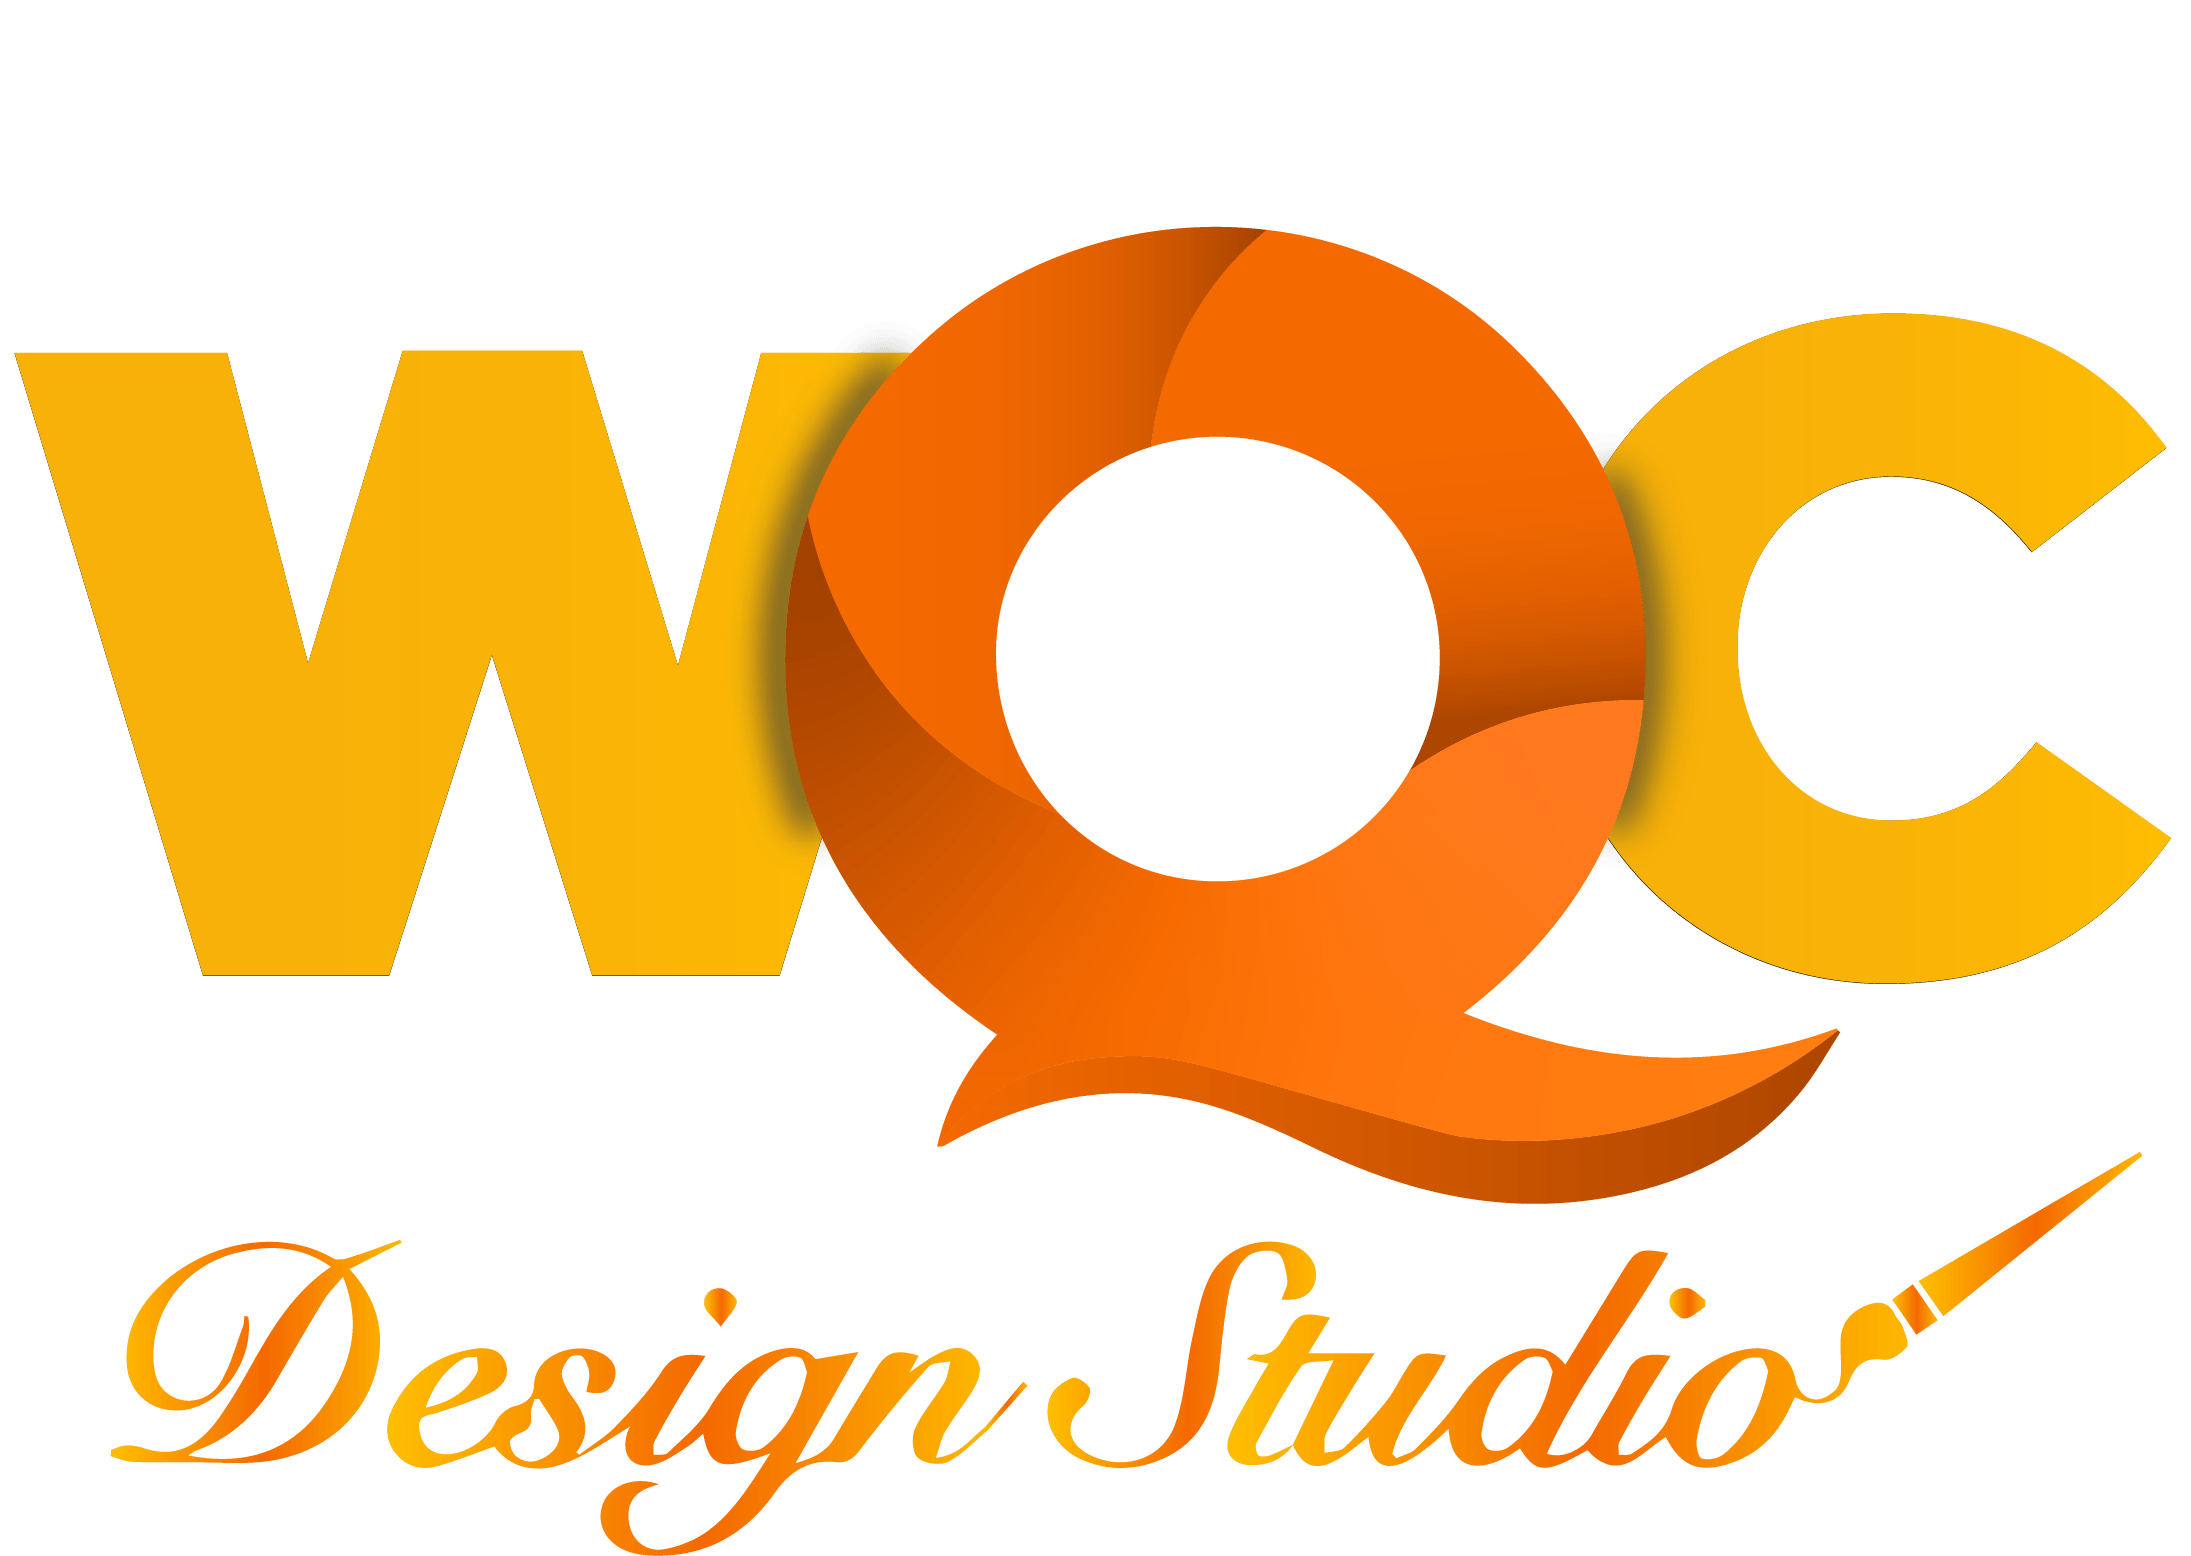 WQC Design Studio